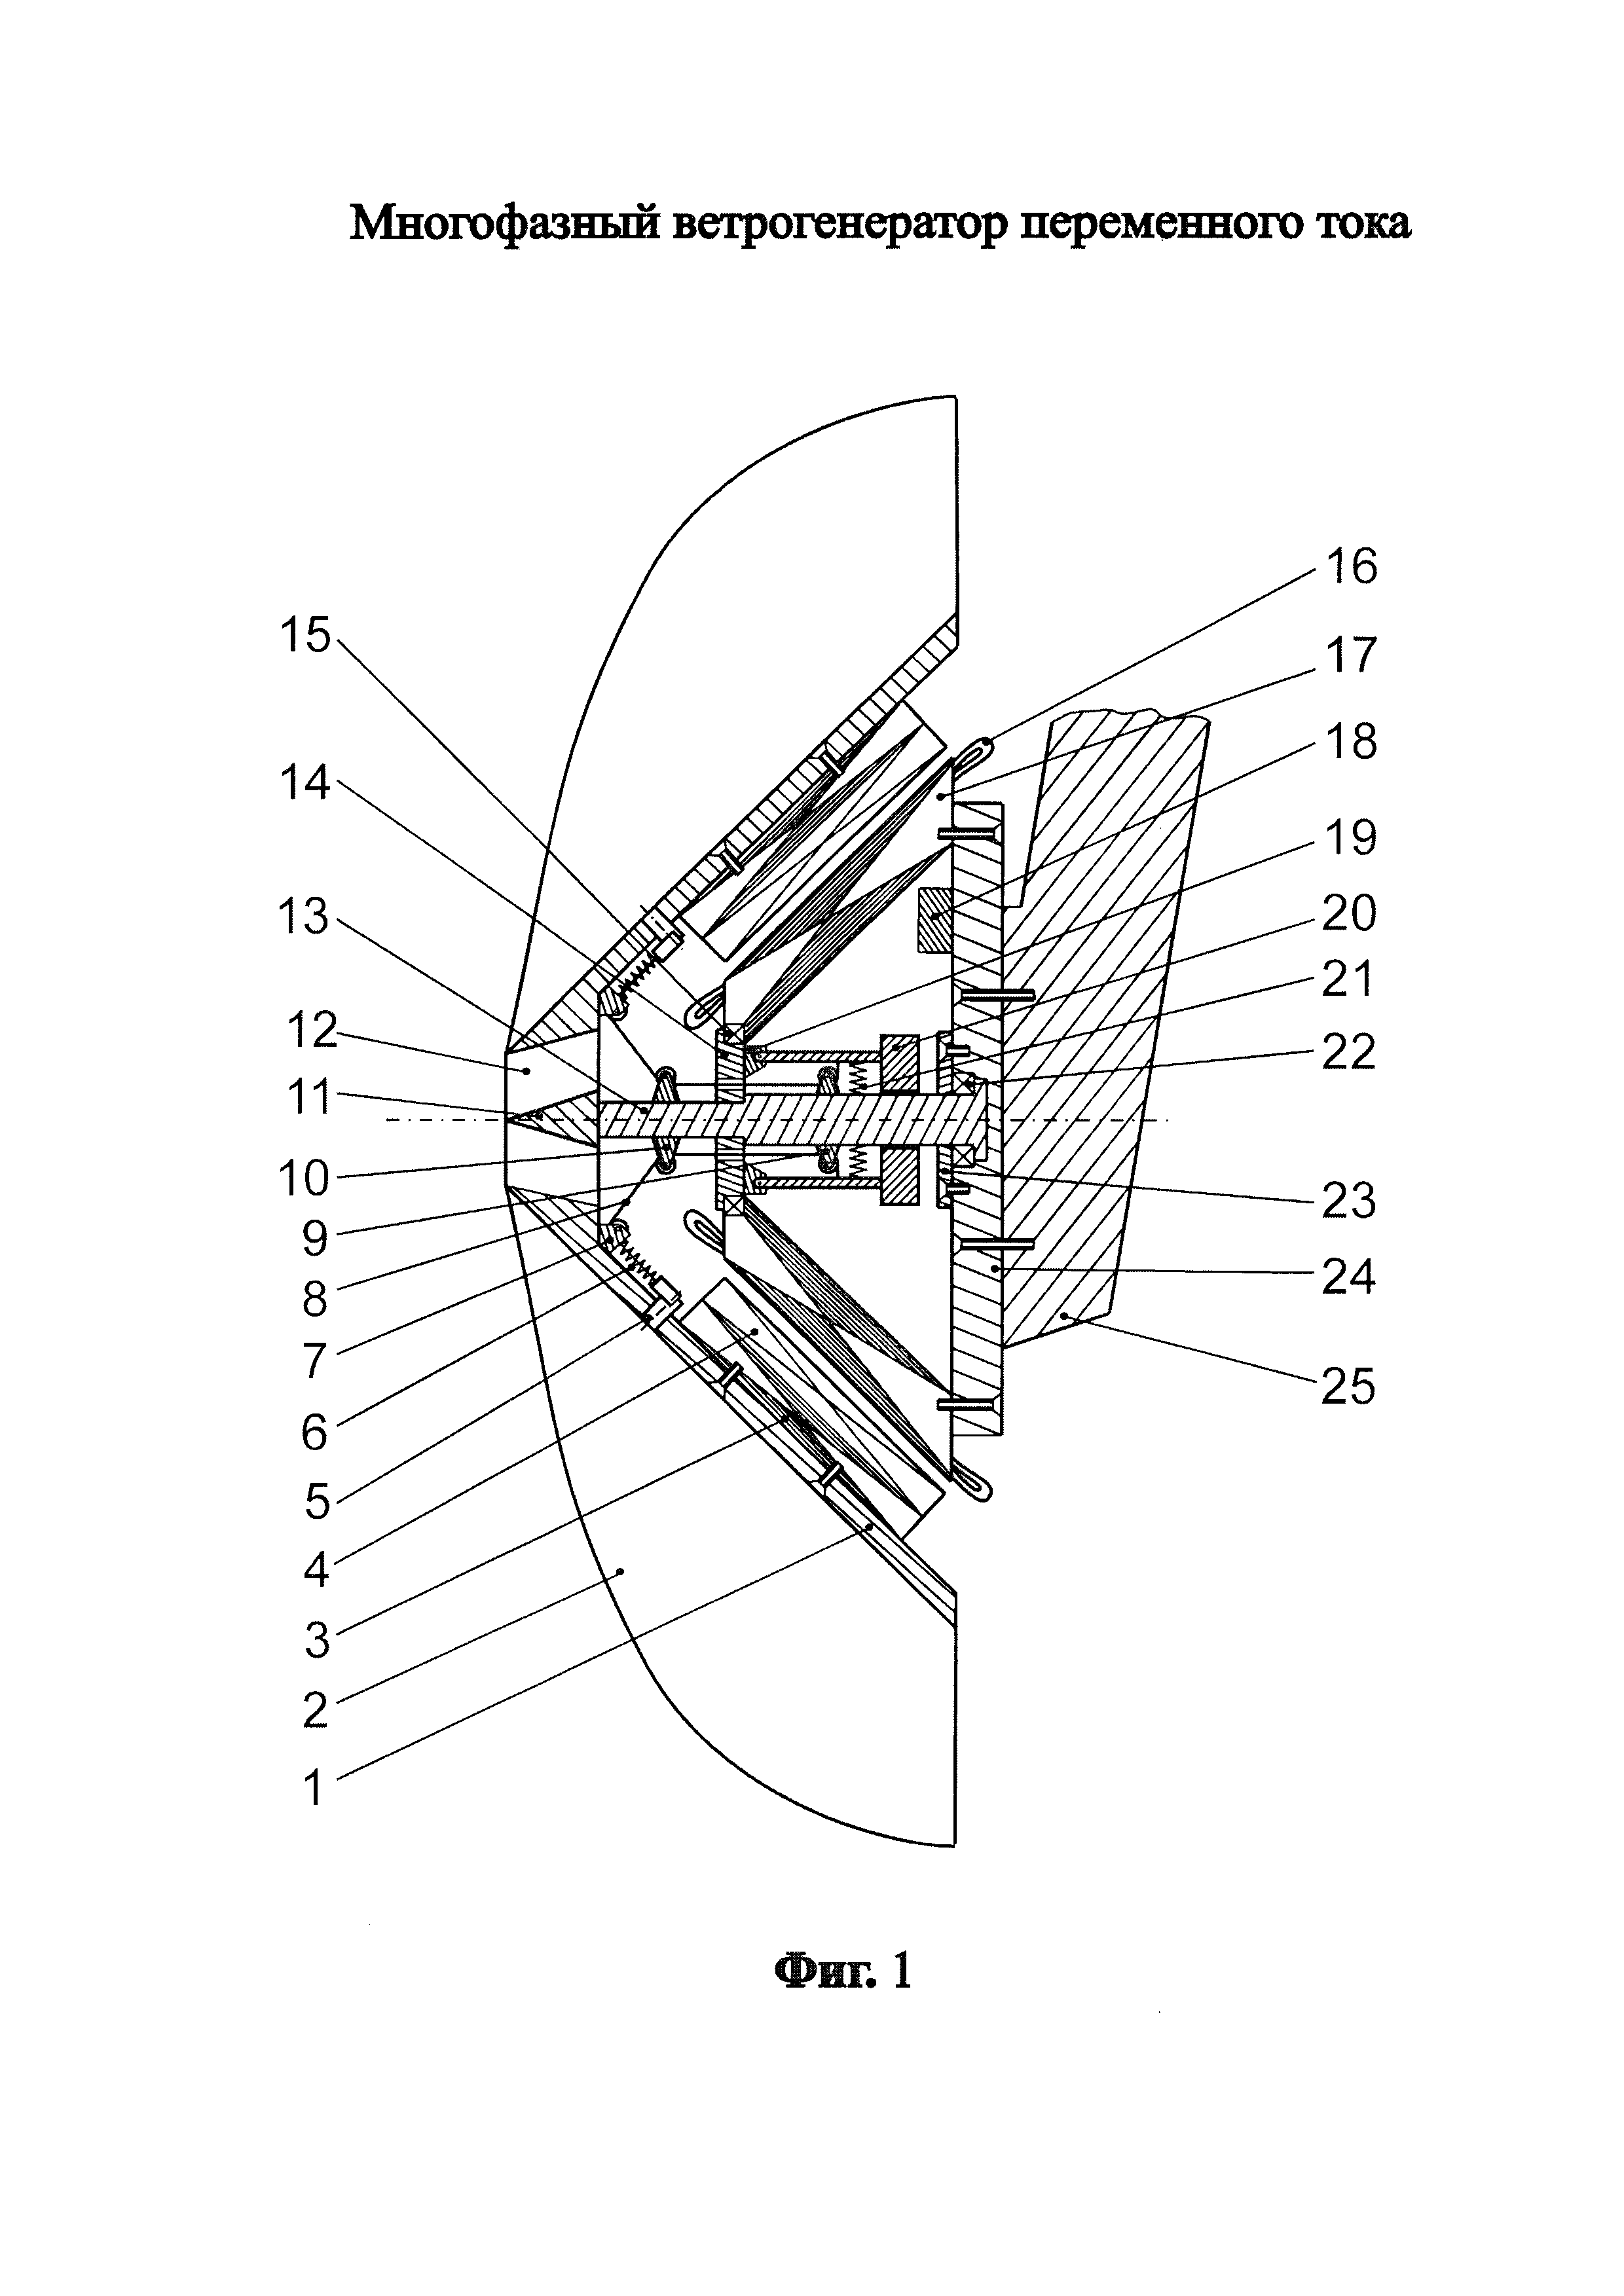 Многофазный ветрогенератор переменного тока